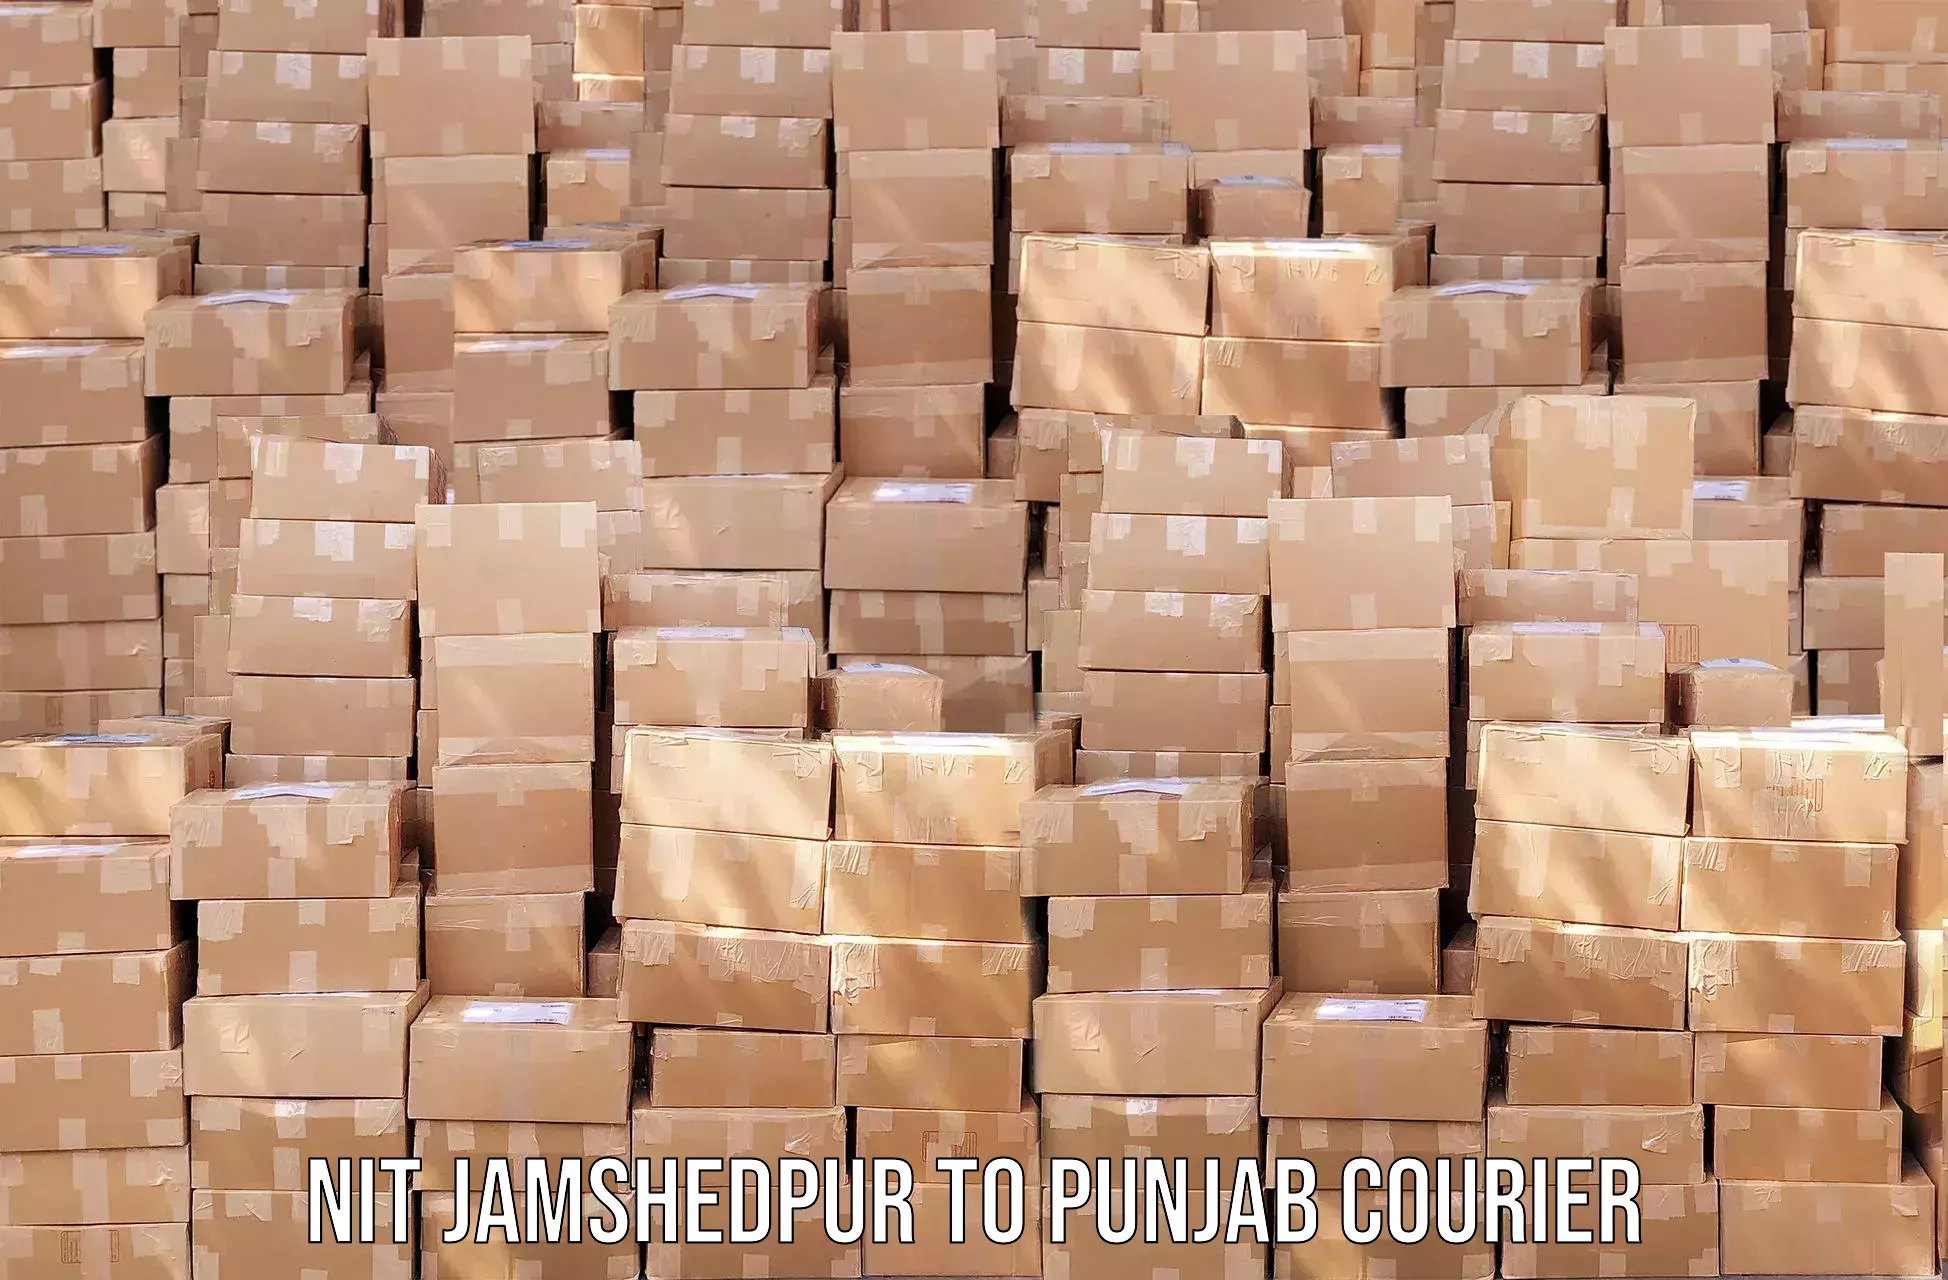 High value parcel delivery NIT Jamshedpur to Mohali